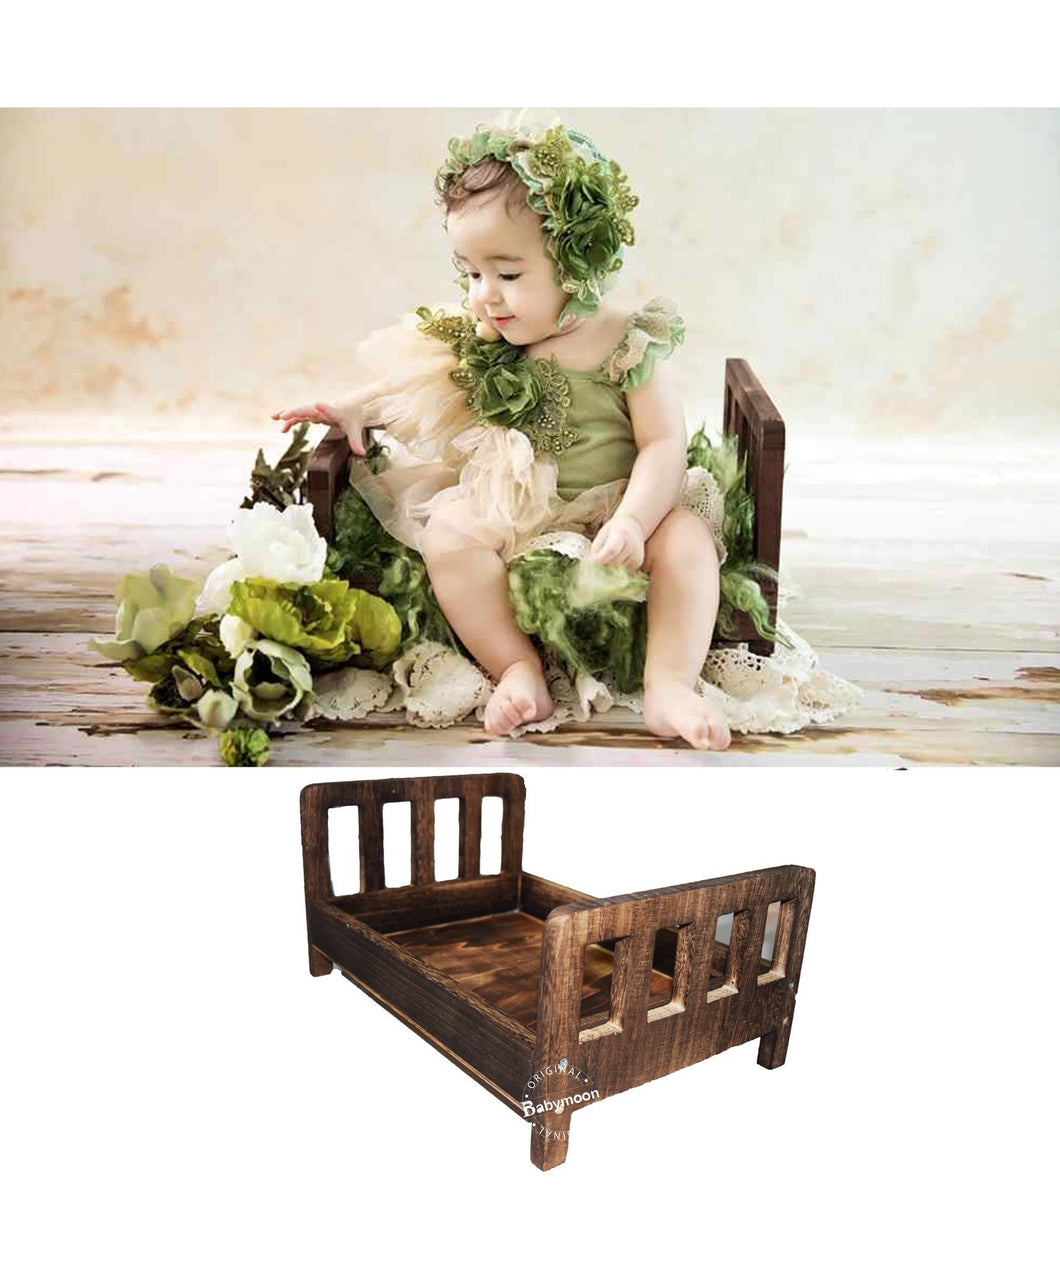 Babymoon Rustic Bed Wooden Properties Photoshoot Prop-Brown